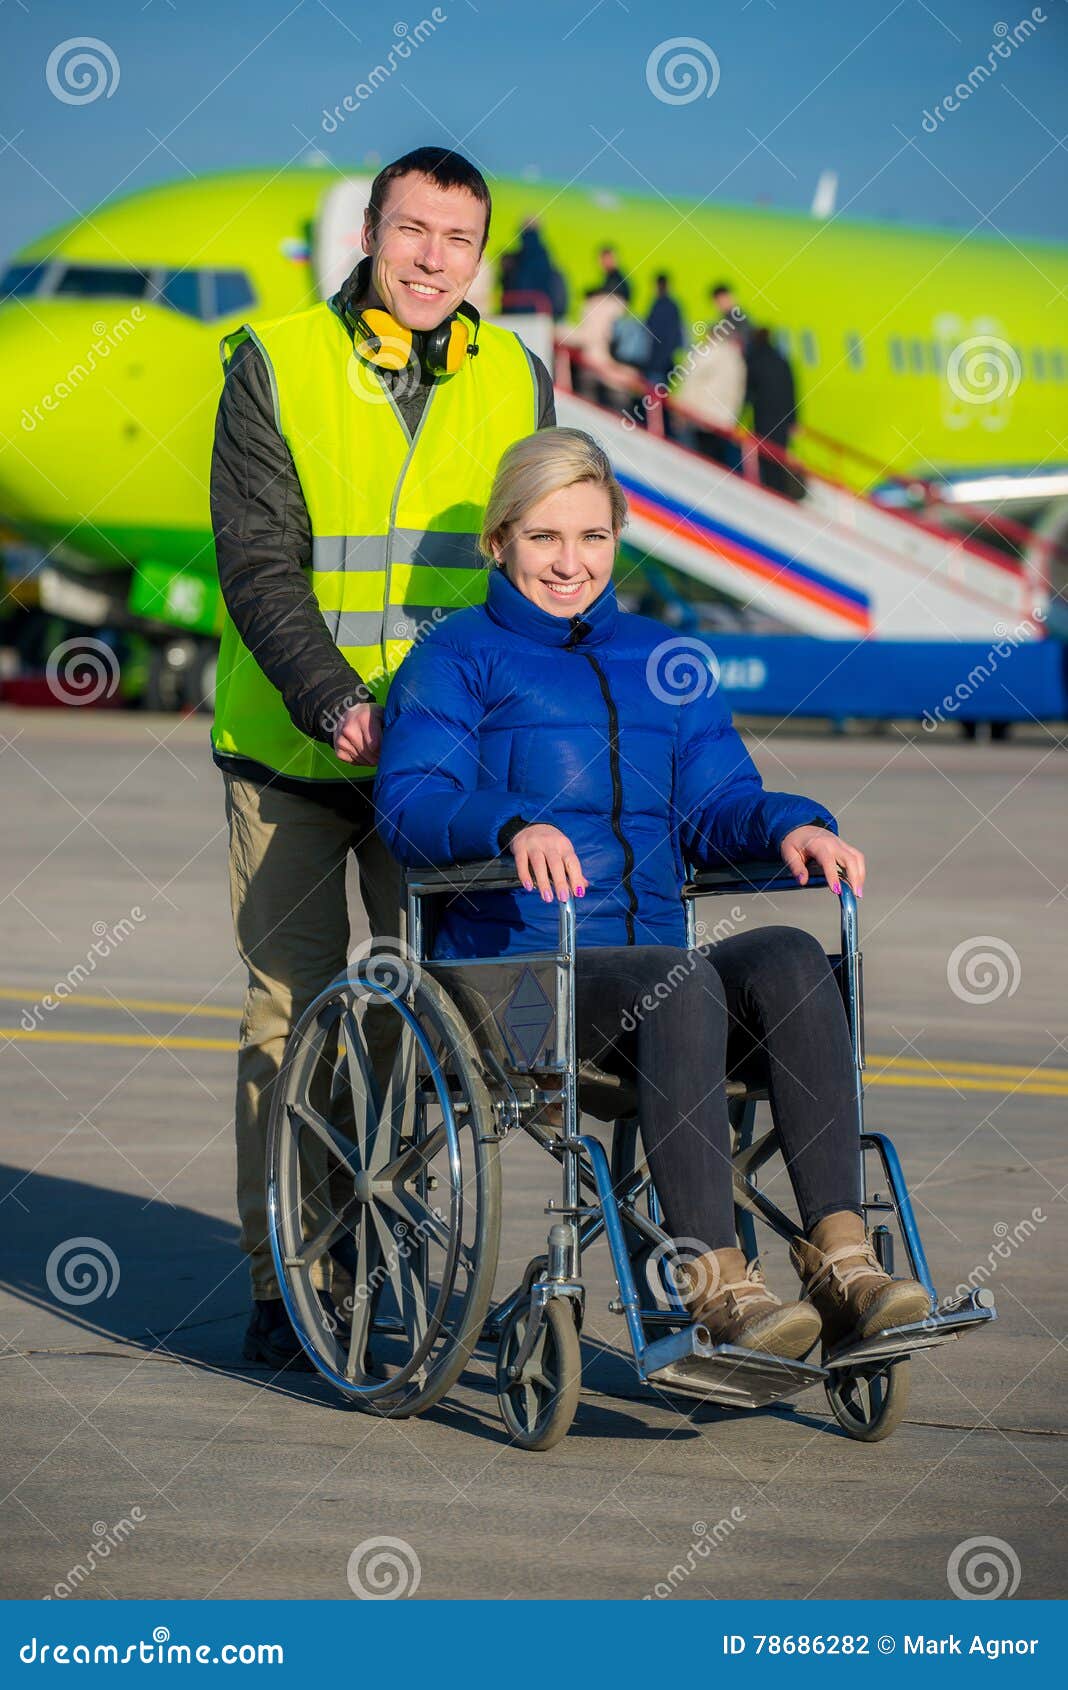 Перевозка пассажиров инвалидов. Инвалид в самолете. Инвалиды в аэропорту. Пассажиры с ограниченными возможностями. Коляска для маломобильных людей.